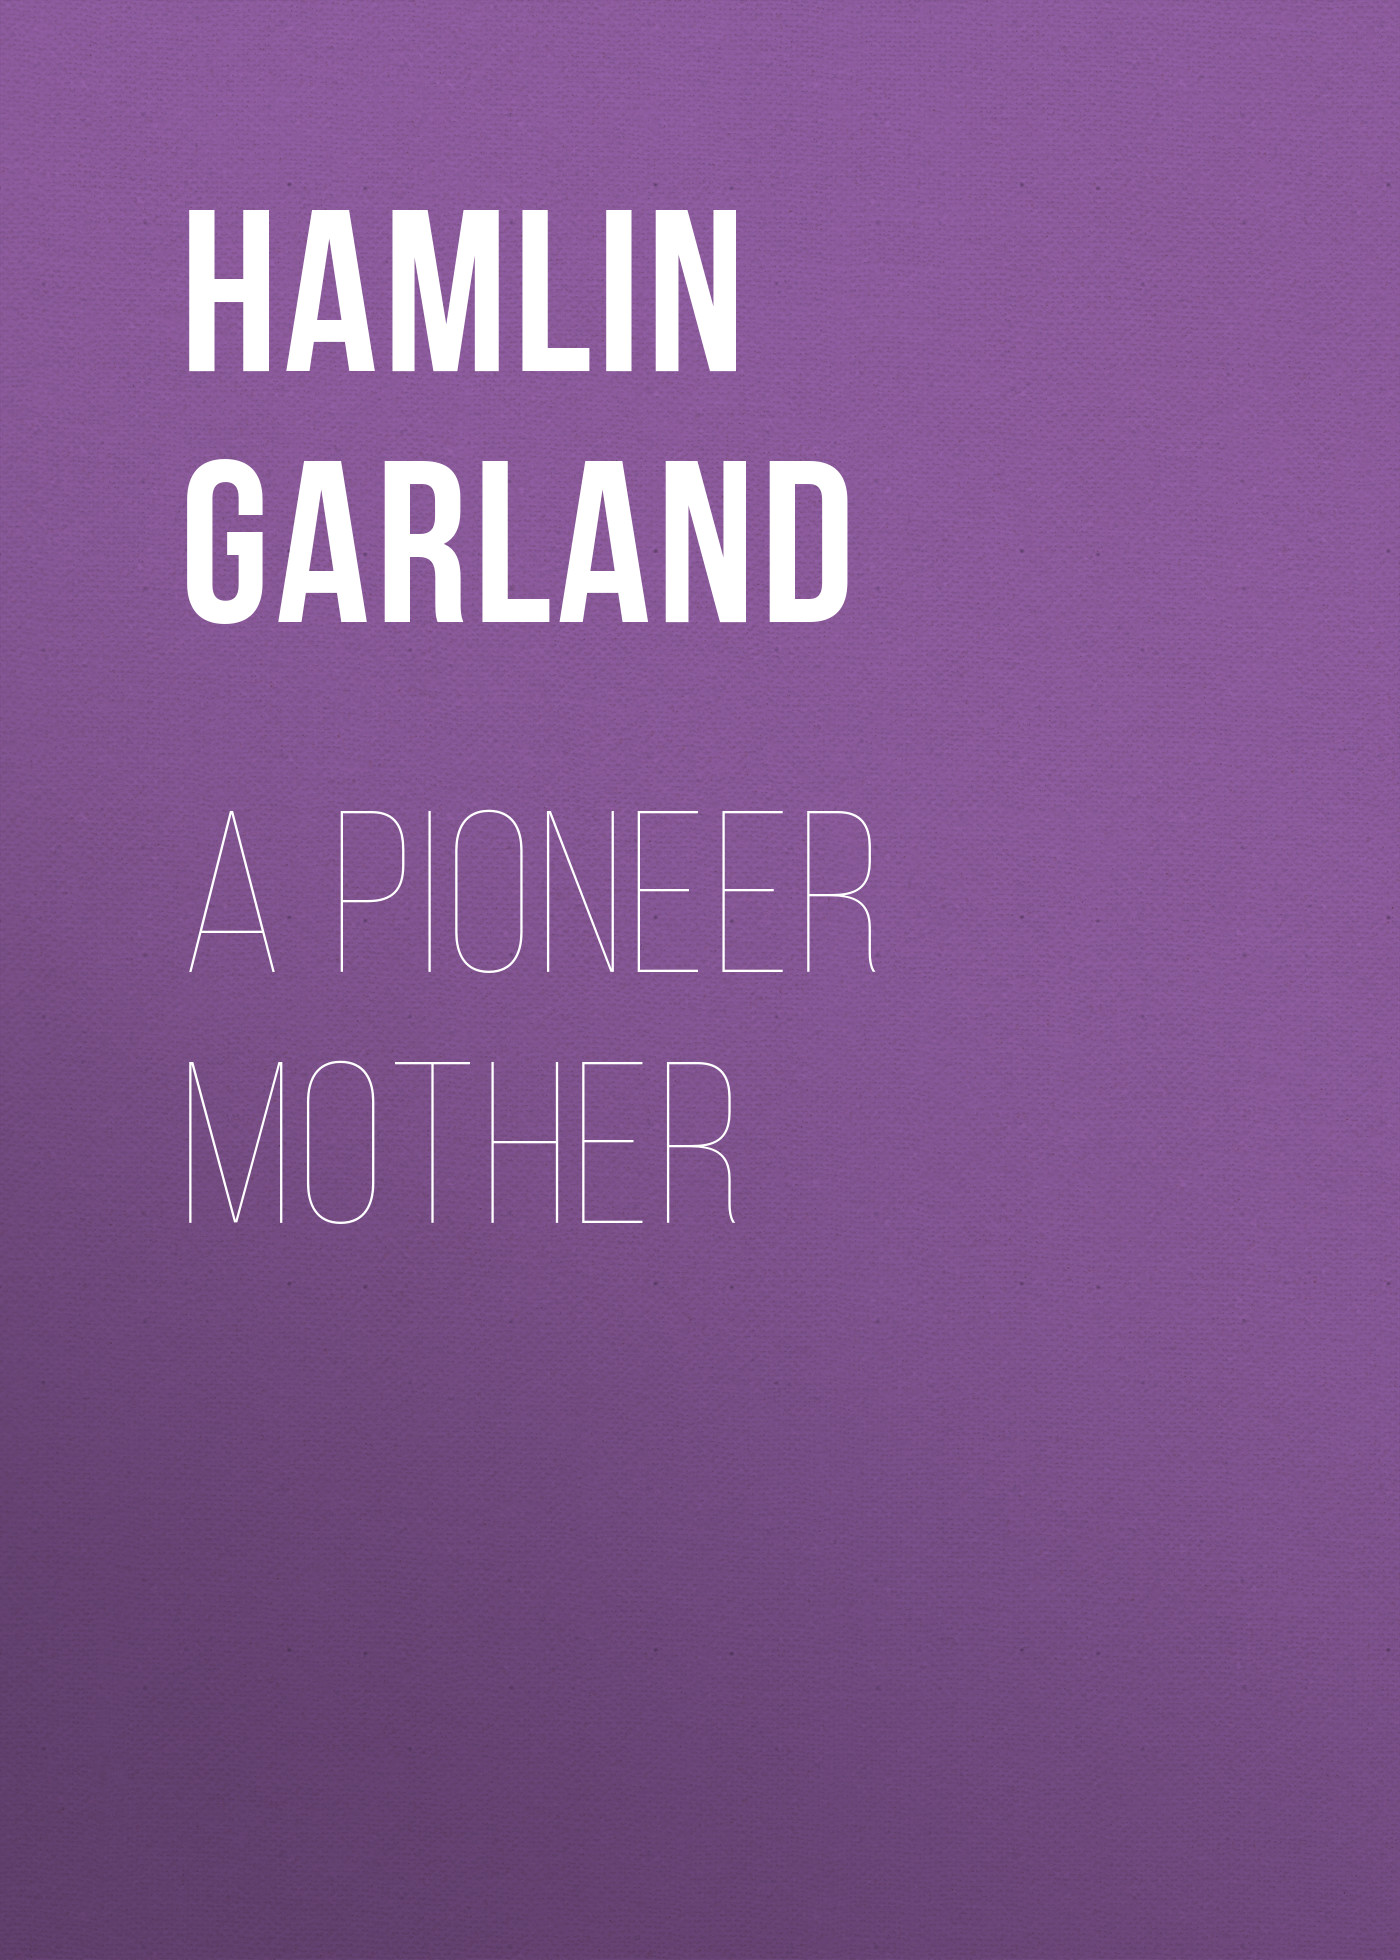 Книга A Pioneer Mother из серии , созданная Hamlin Garland, может относится к жанру Зарубежная классика. Стоимость электронной книги A Pioneer Mother с идентификатором 23164355 составляет 5.99 руб.